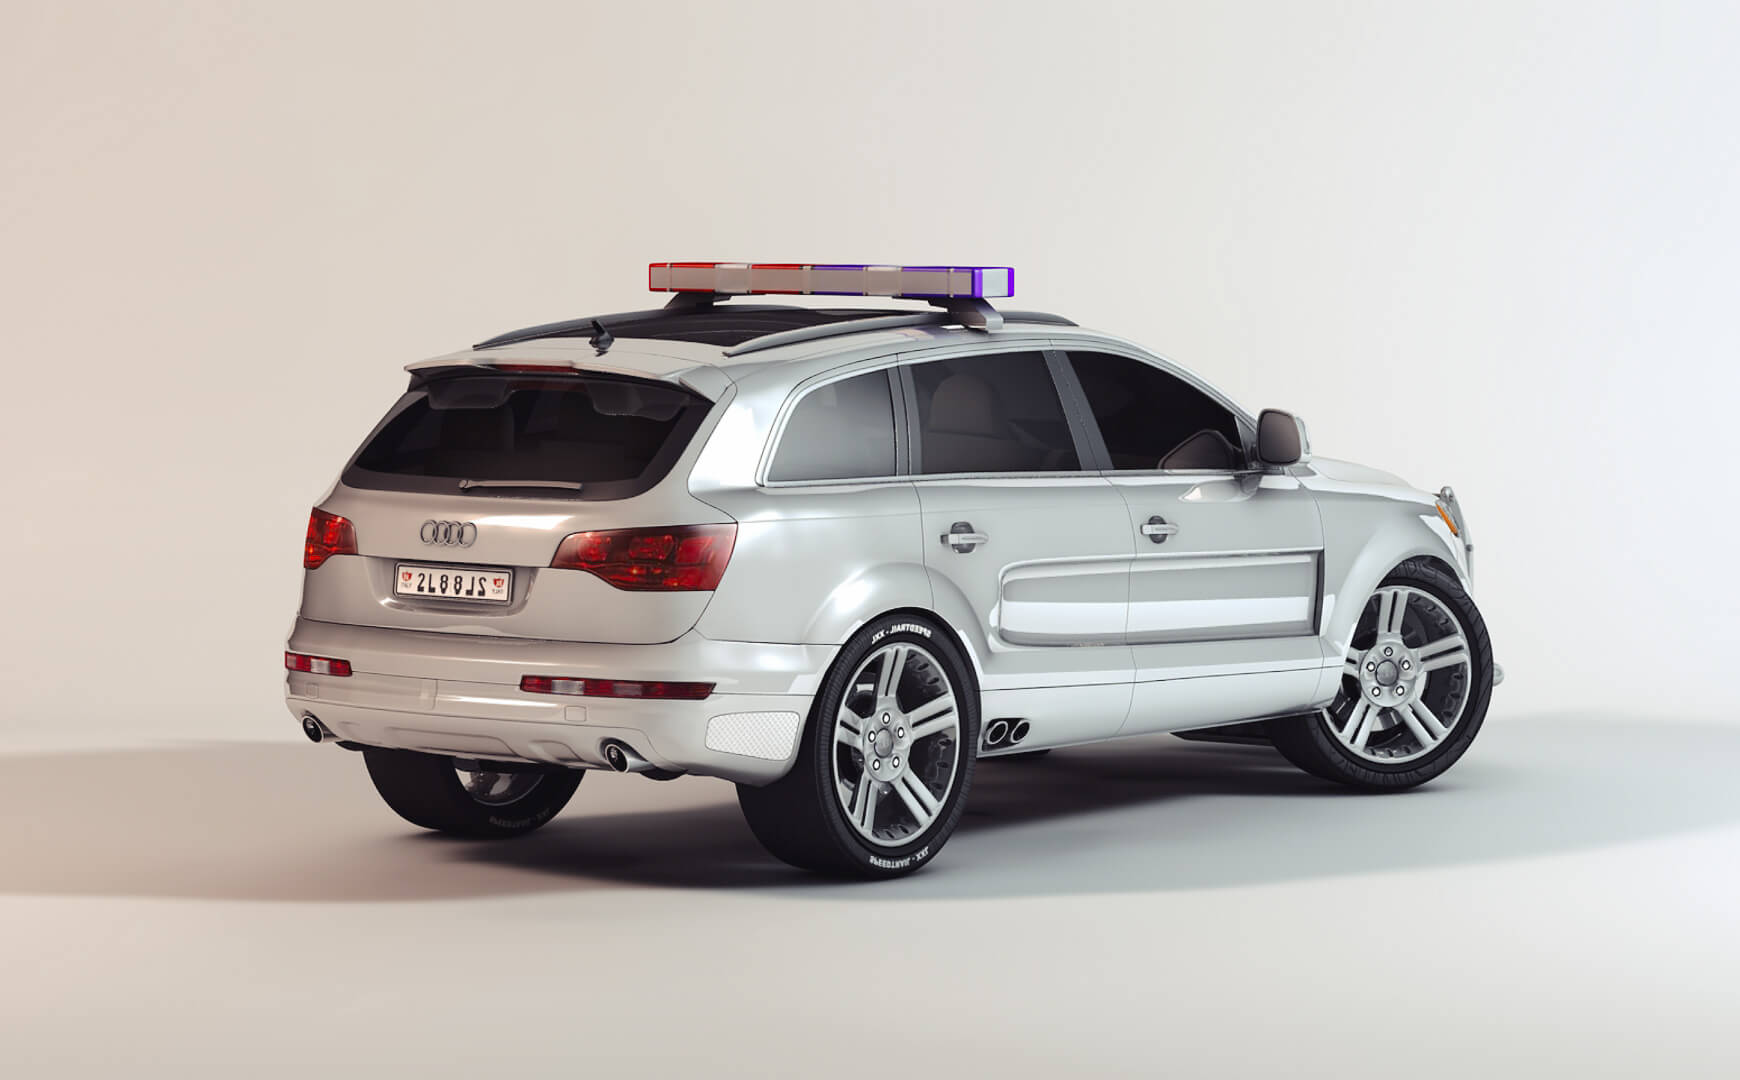 Free Cinema 4D 3D Model Audi Q7 EVO Vehicle